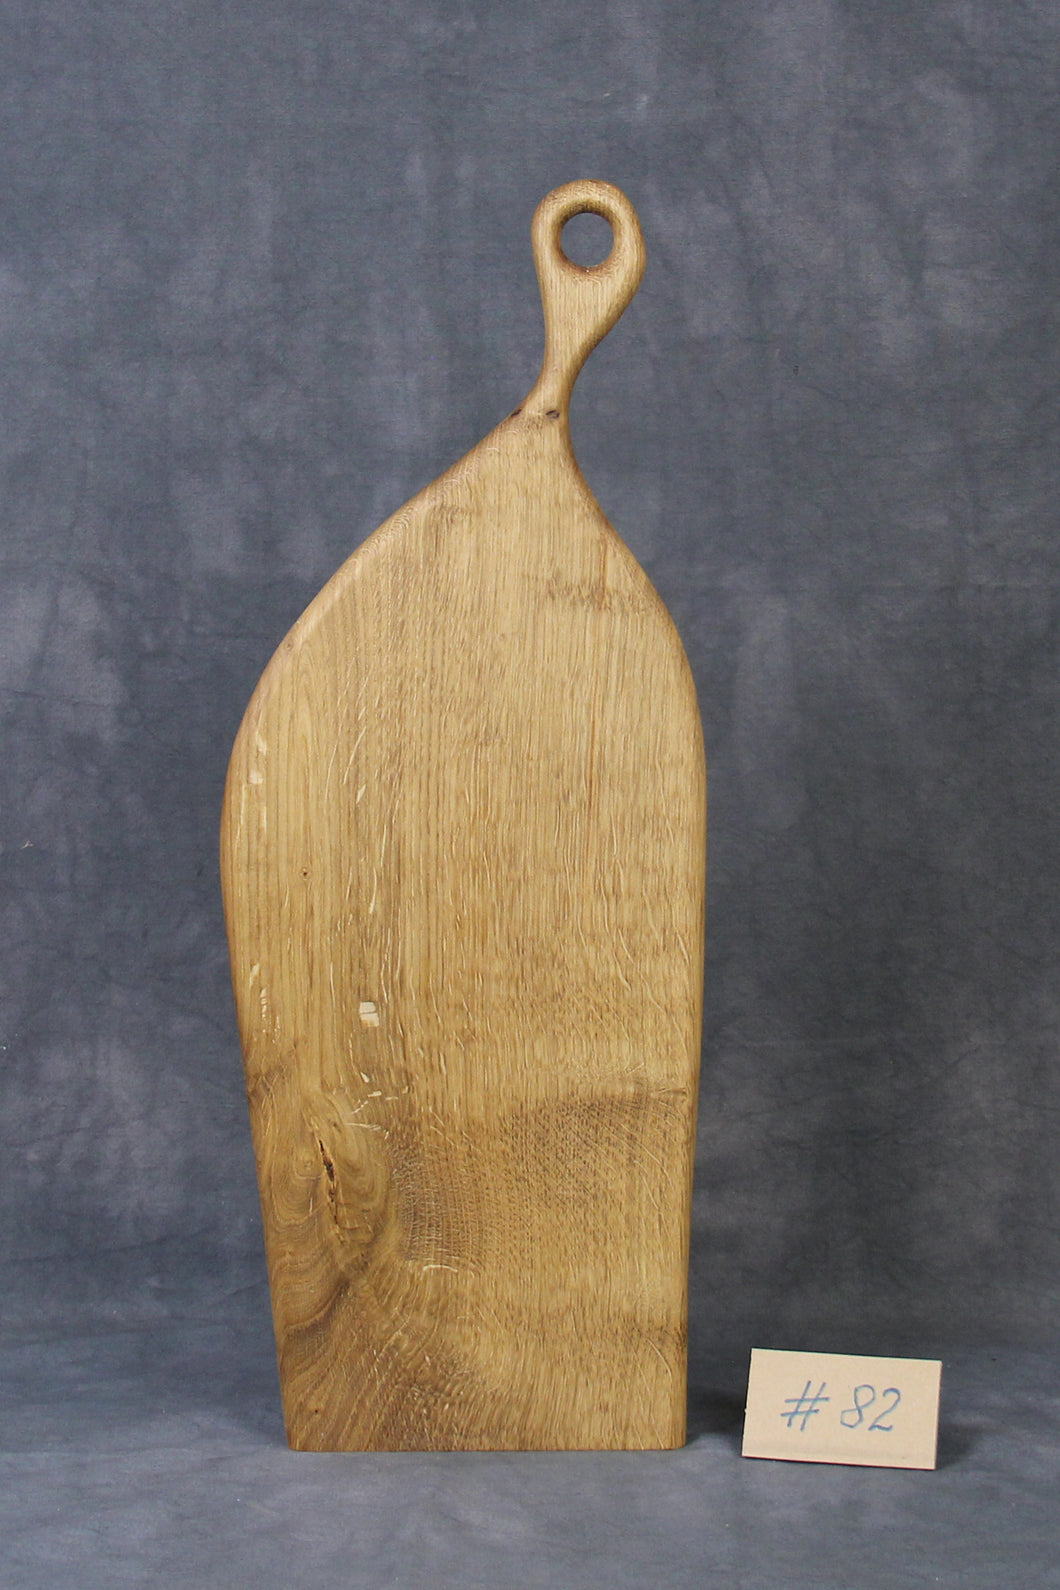 Servierbrett, Schneidebrett, Cuttingboard, Charcuterie Board. No. 82 - ca. 58 cm. Aus einem Stück Eiche - handgefertigt.